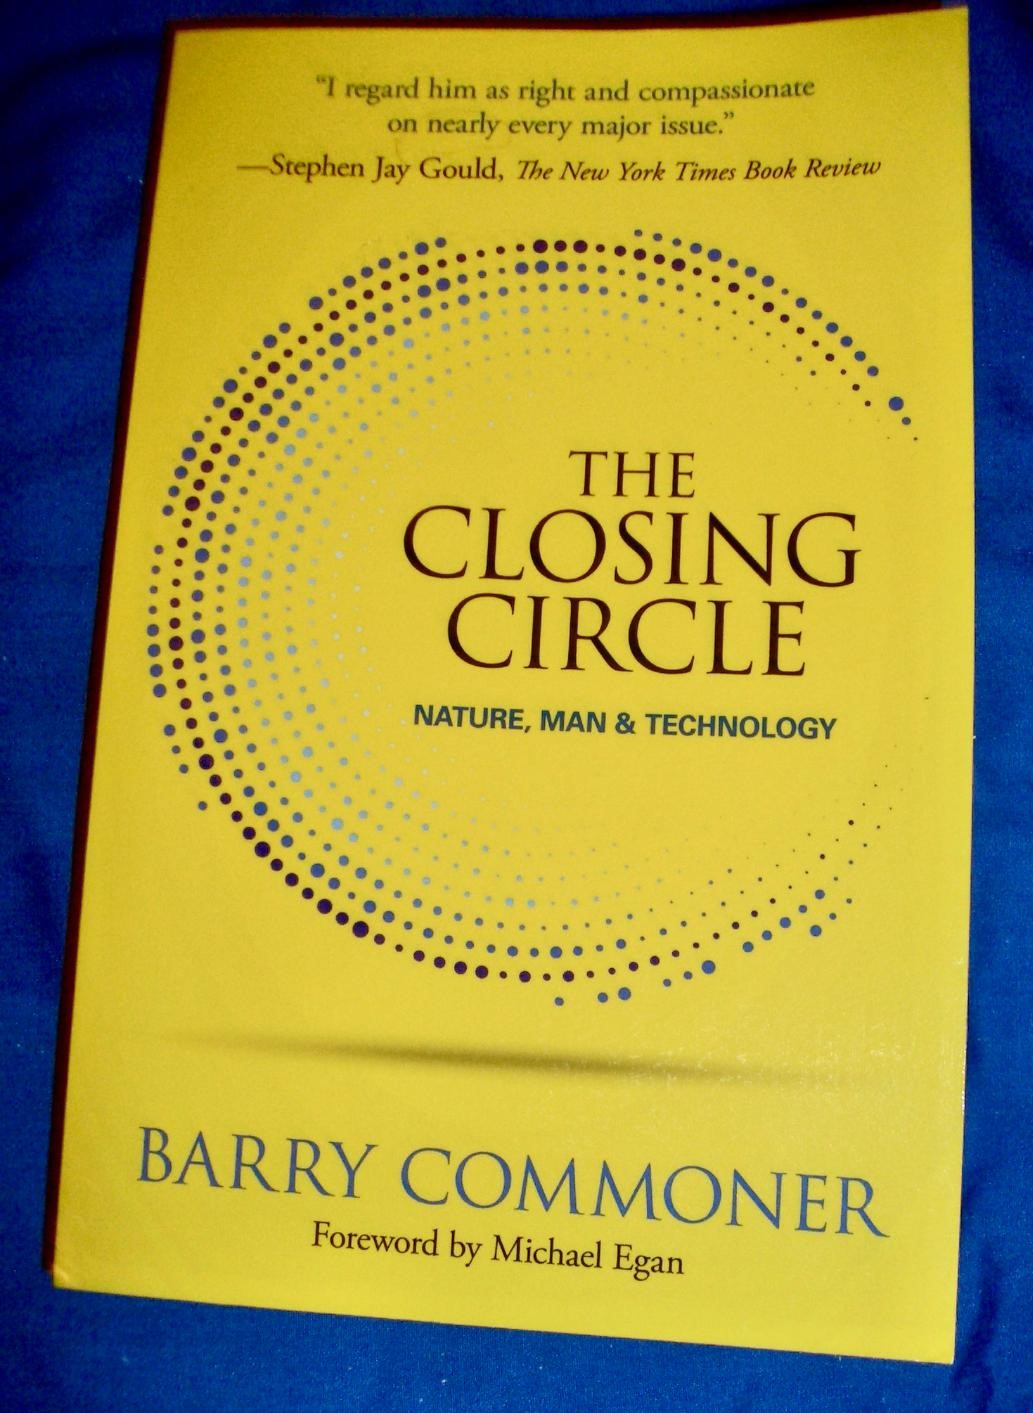 The closing circle